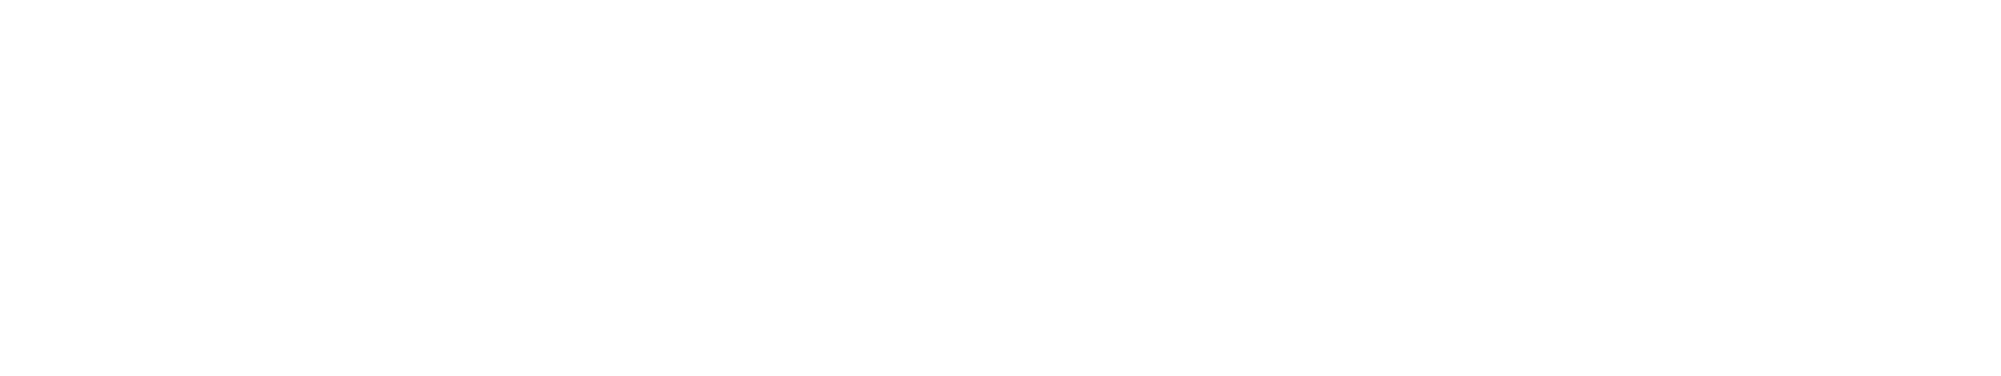 w. p. carey logo